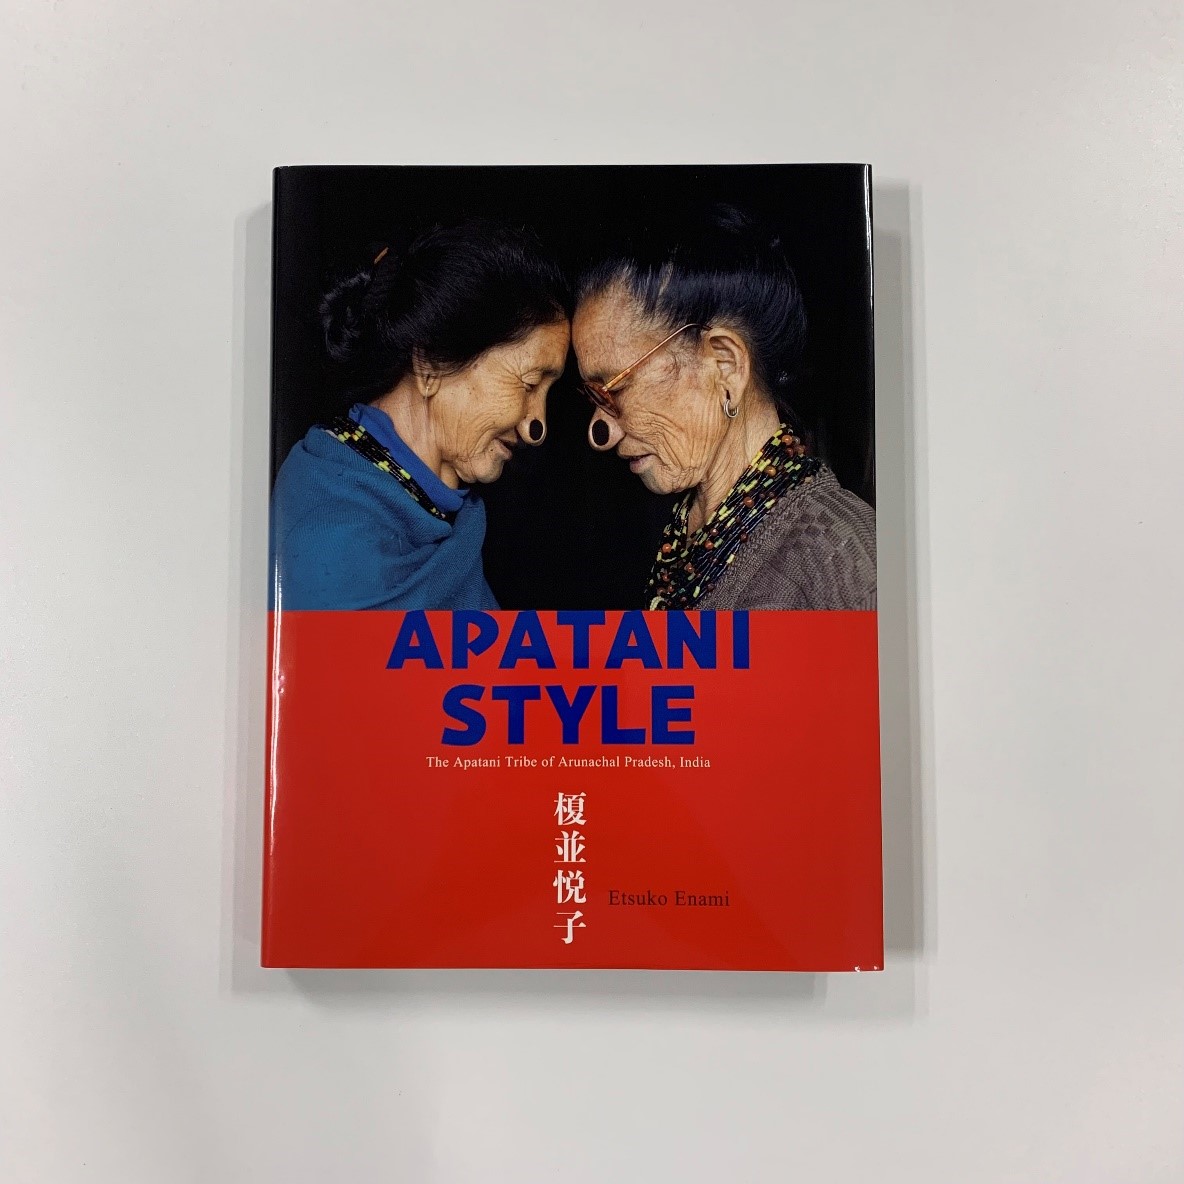 榎並悦子氏「APATANI STYLE」の書籍印刷を担当しました。